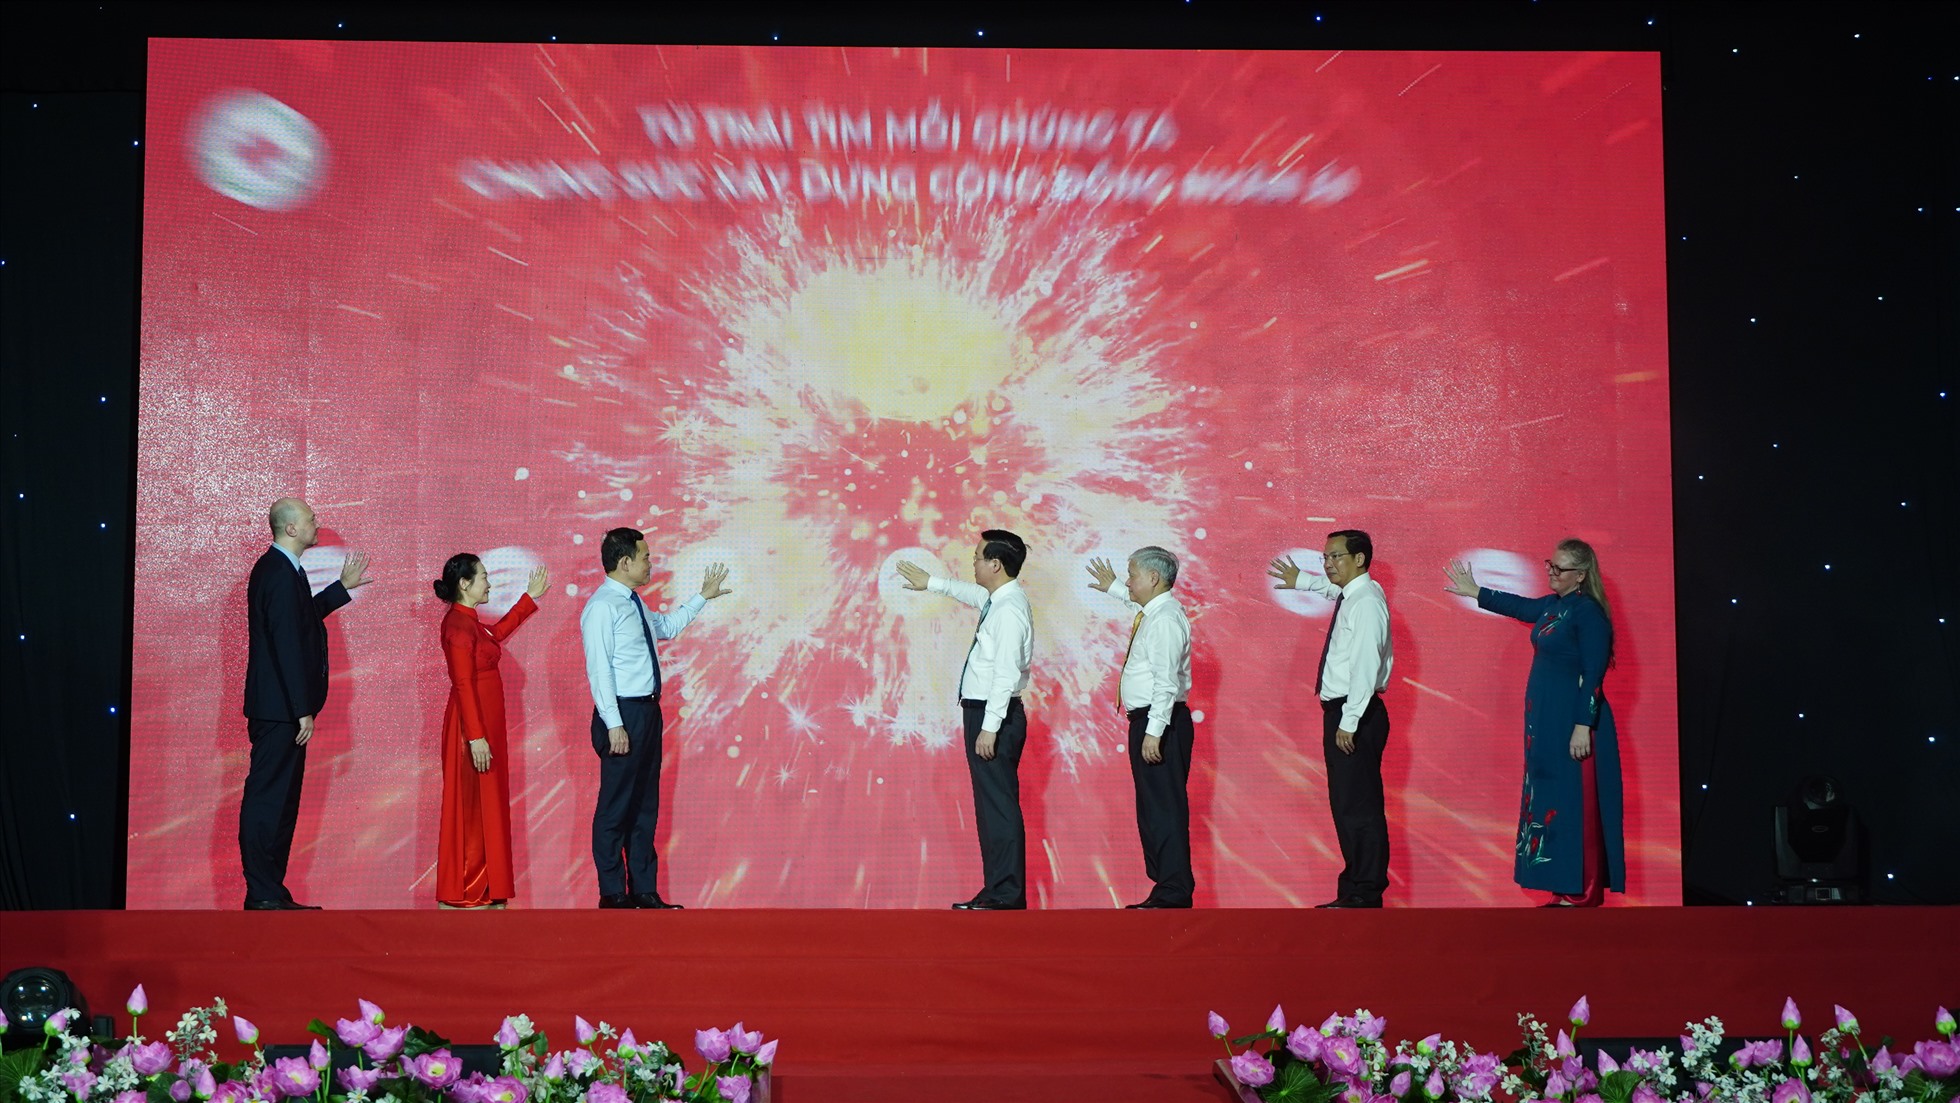 Chủ tịch nước Võ Văn Thưởng và các đại biểu thực hiện nghi thức phát động Tháng nhân đạo năm 2023 và khởi động phong trào “Người tốt, việc thiện - chung sức xây dựng cộng đồng nhân ái”. Ảnh: Tạ Quang